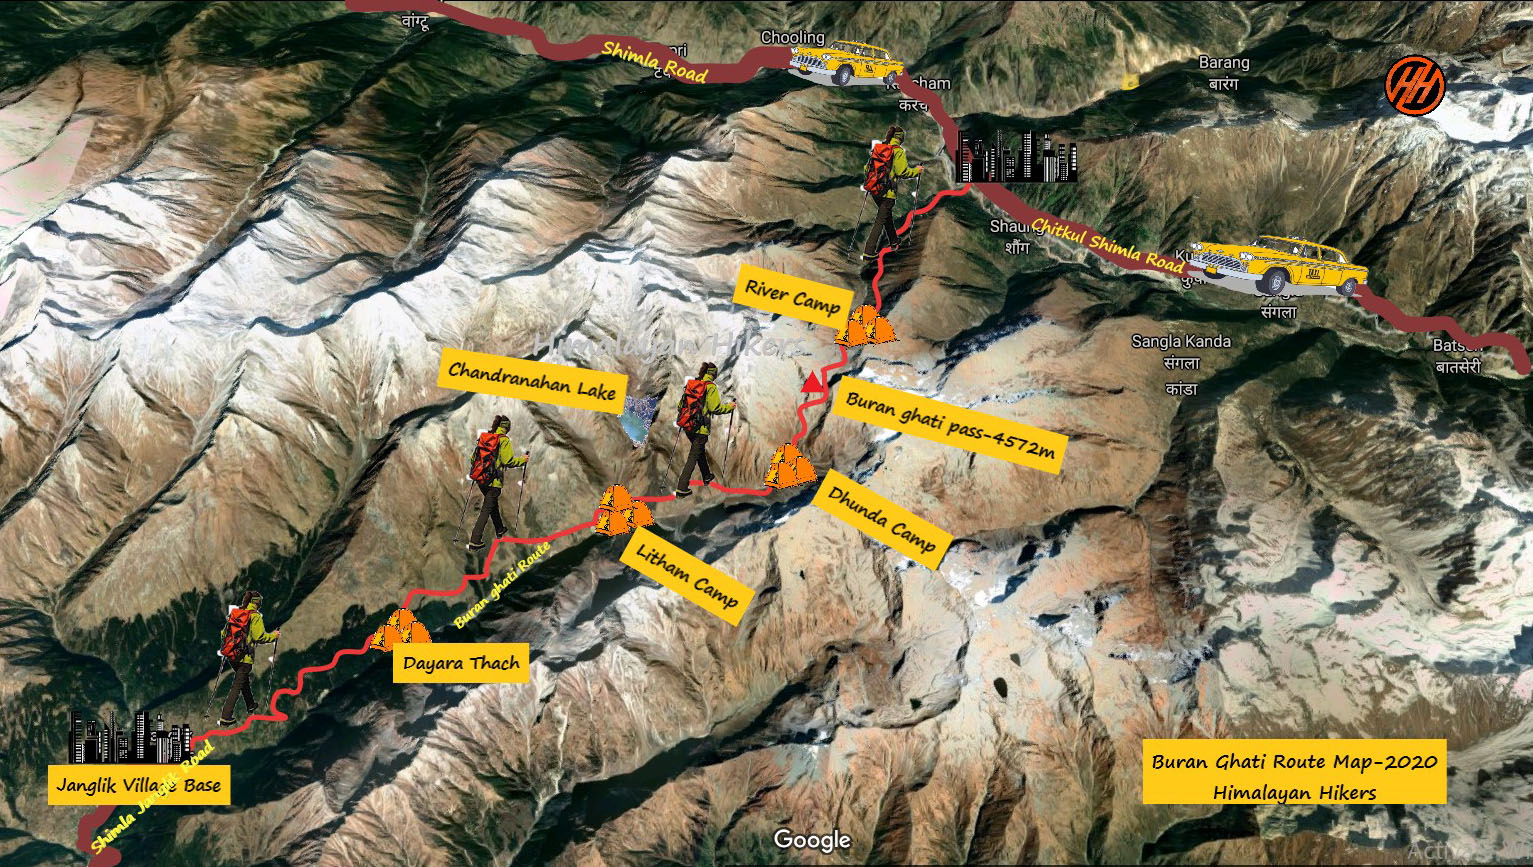 Buran Ghati Trek Route Map